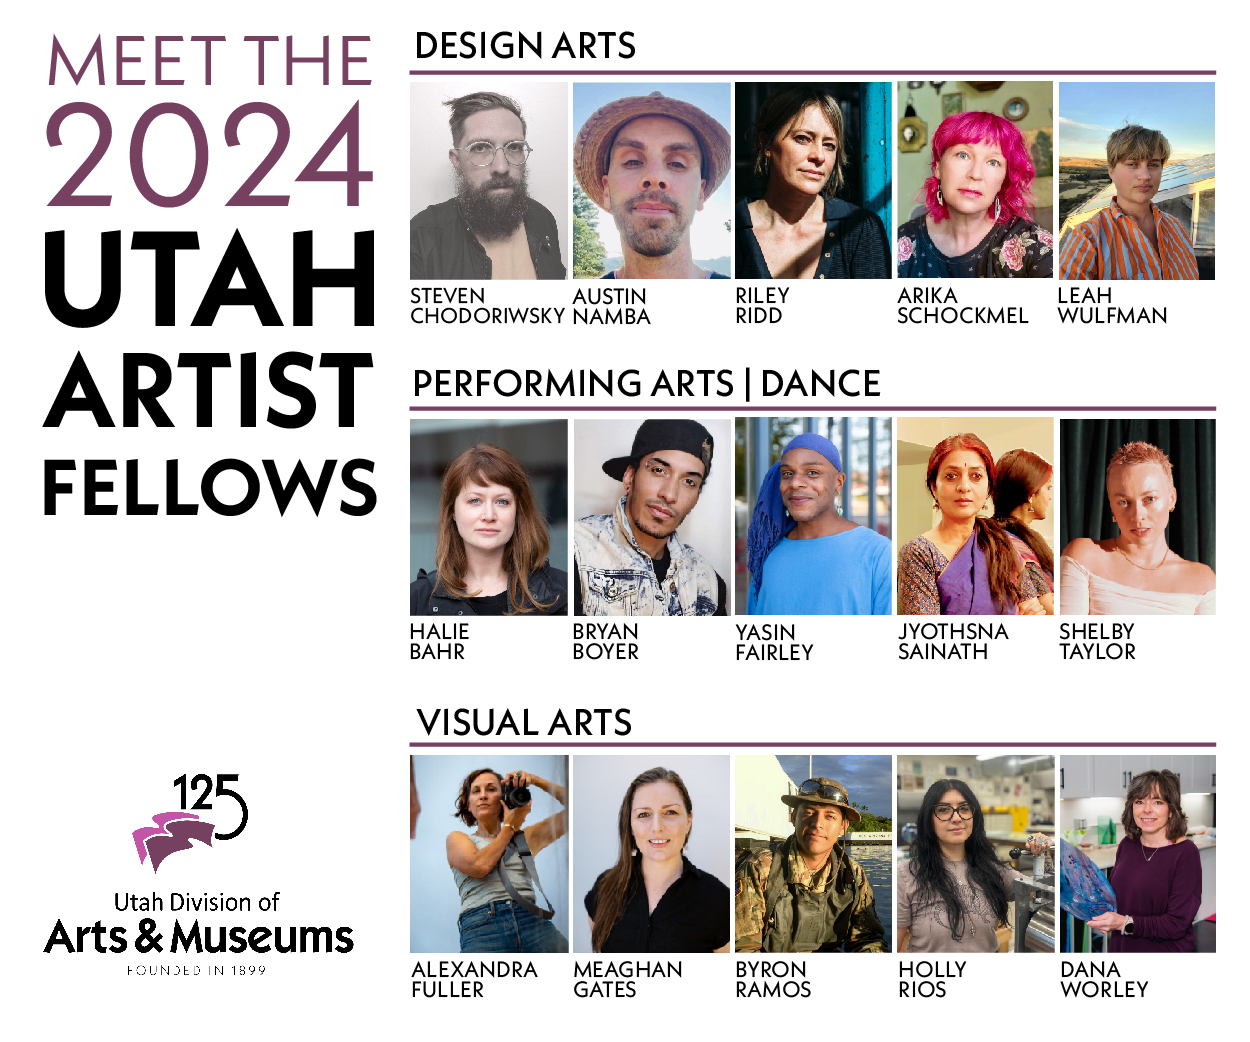 Meet the 2024 Utah Artist Fellows.